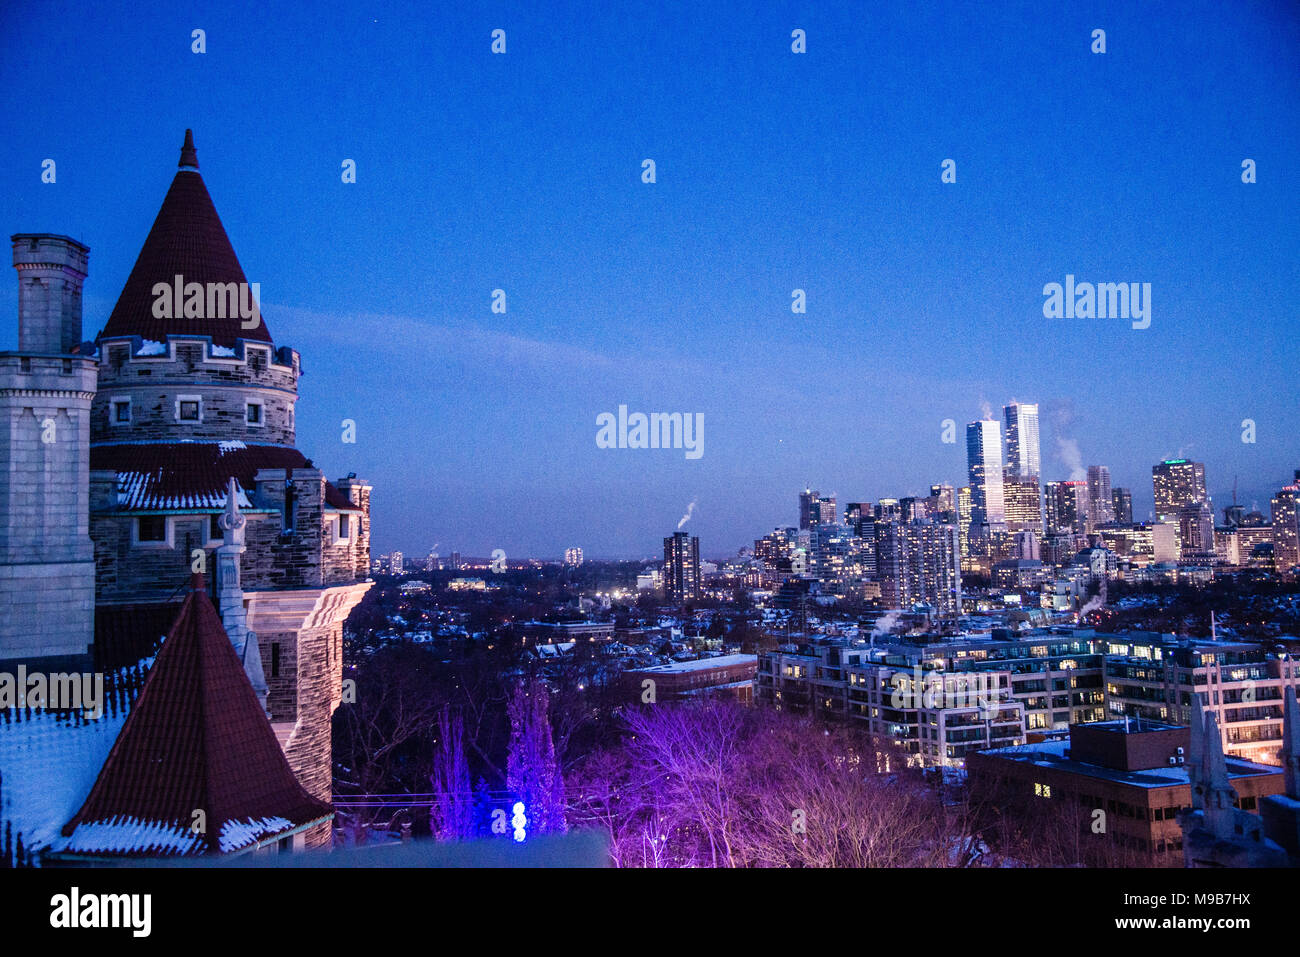 La ville de Toronto Vue de nuit à partir de la Casa Loma, Ontario Canada Banque D'Images